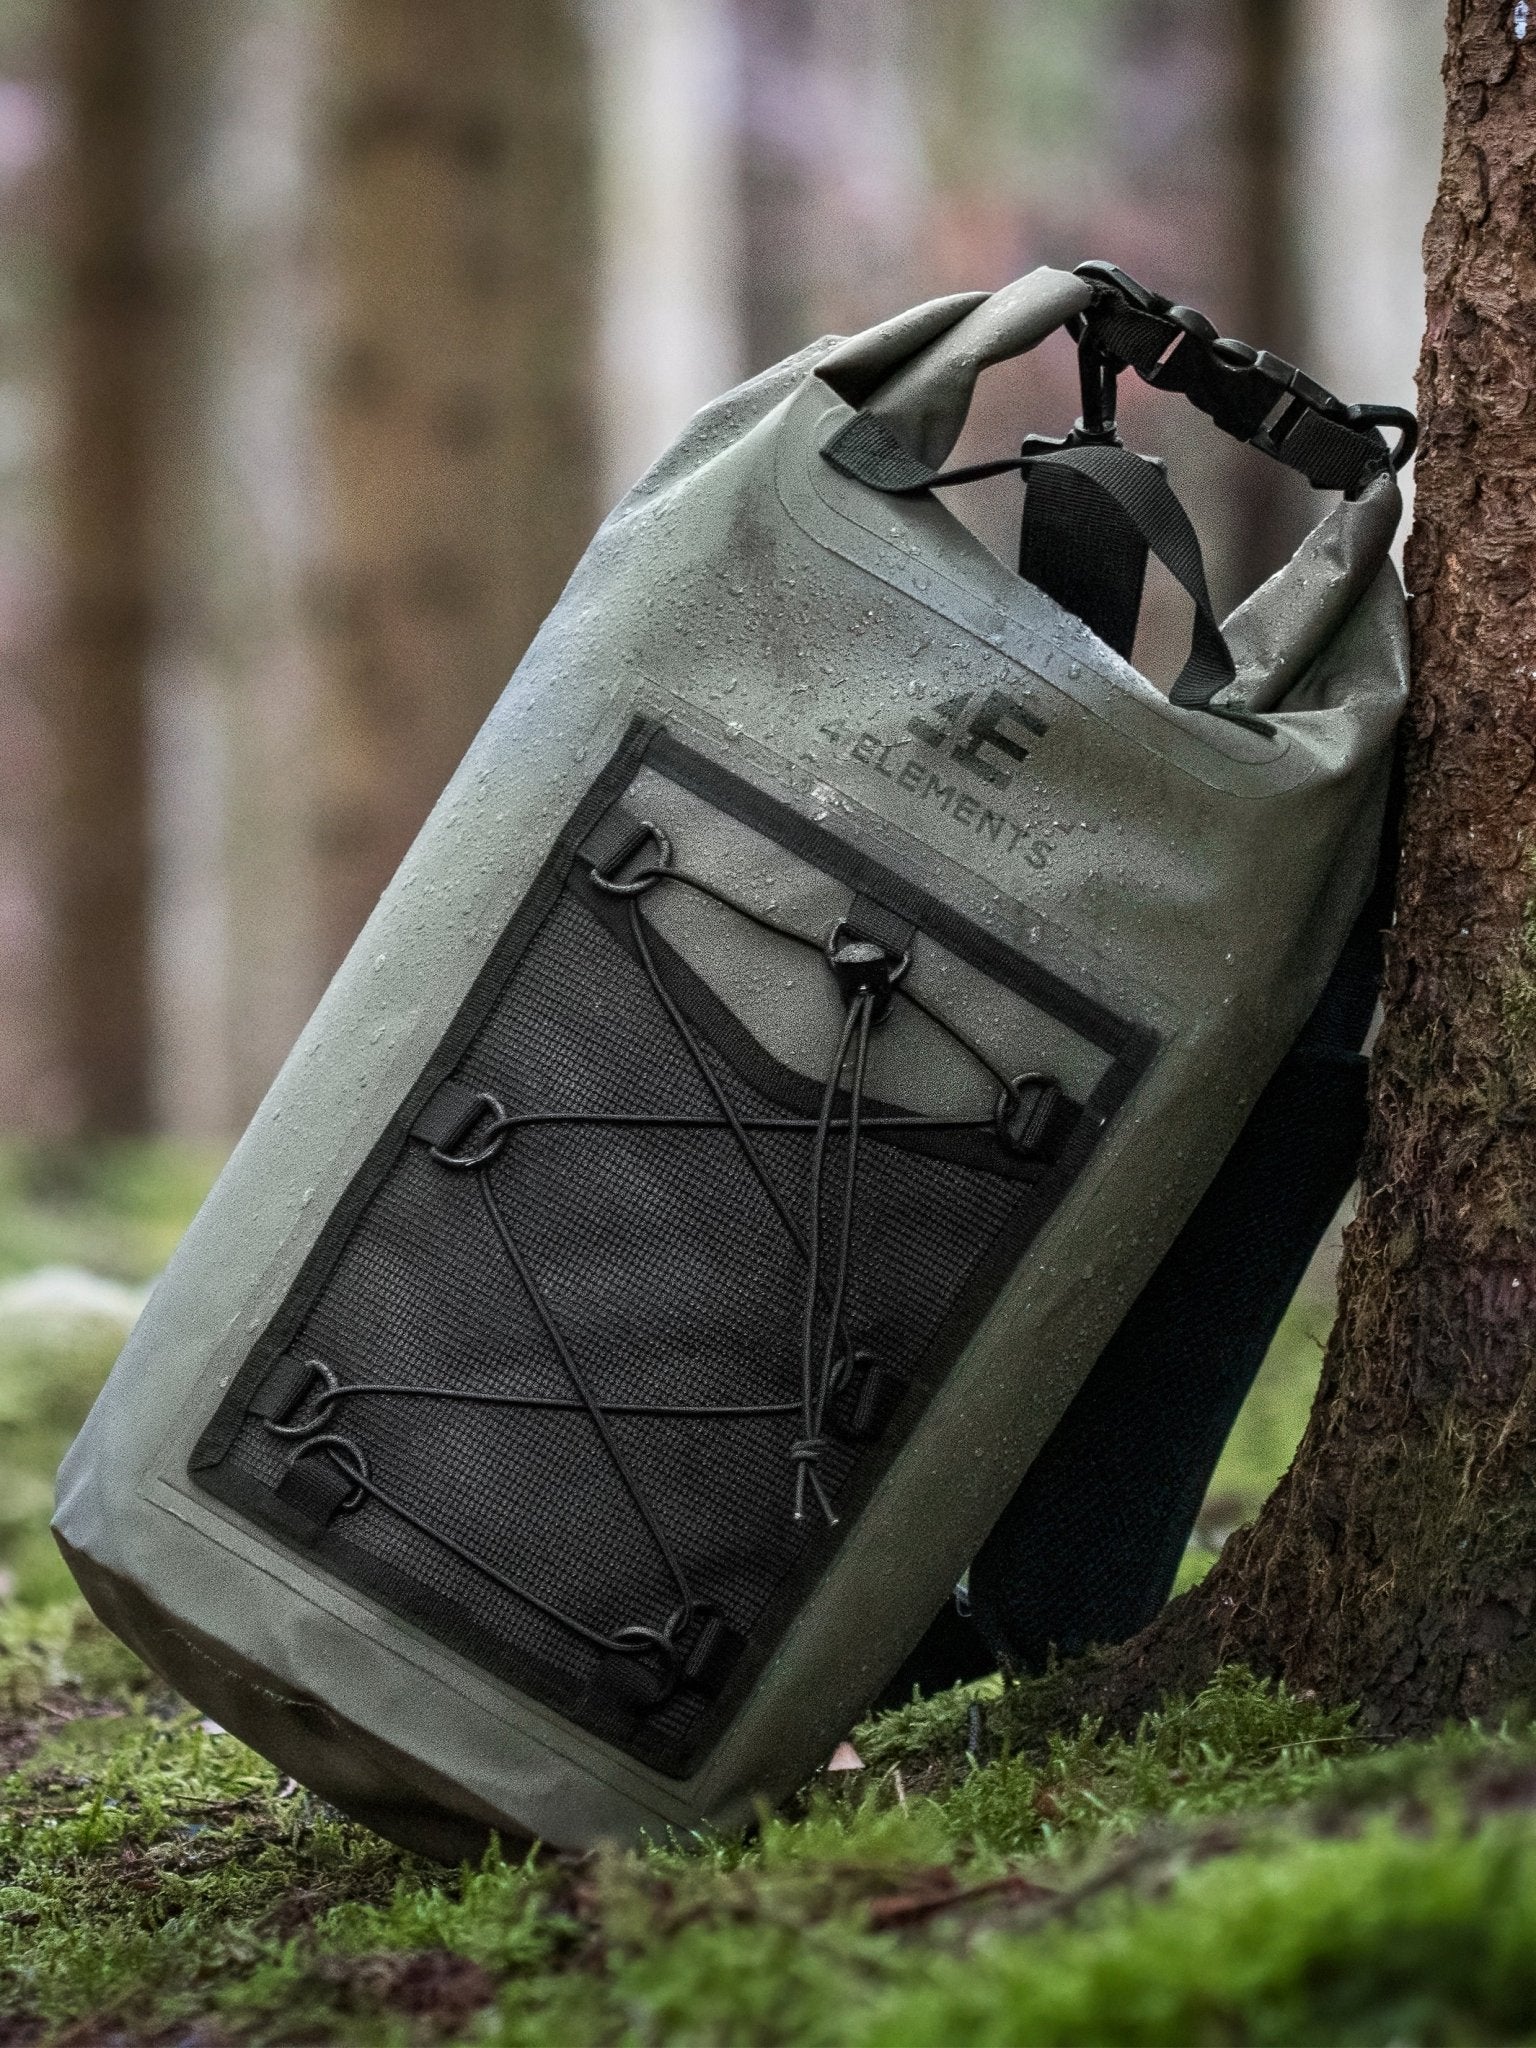 4 Elements - Waterproof bag and Dry Bag Roll Top waterproof Rucksack, Wet  bag & Hiking, waters sports or camping bag, 20L drybag - 4elementsclothing,  4 Elements Clothing